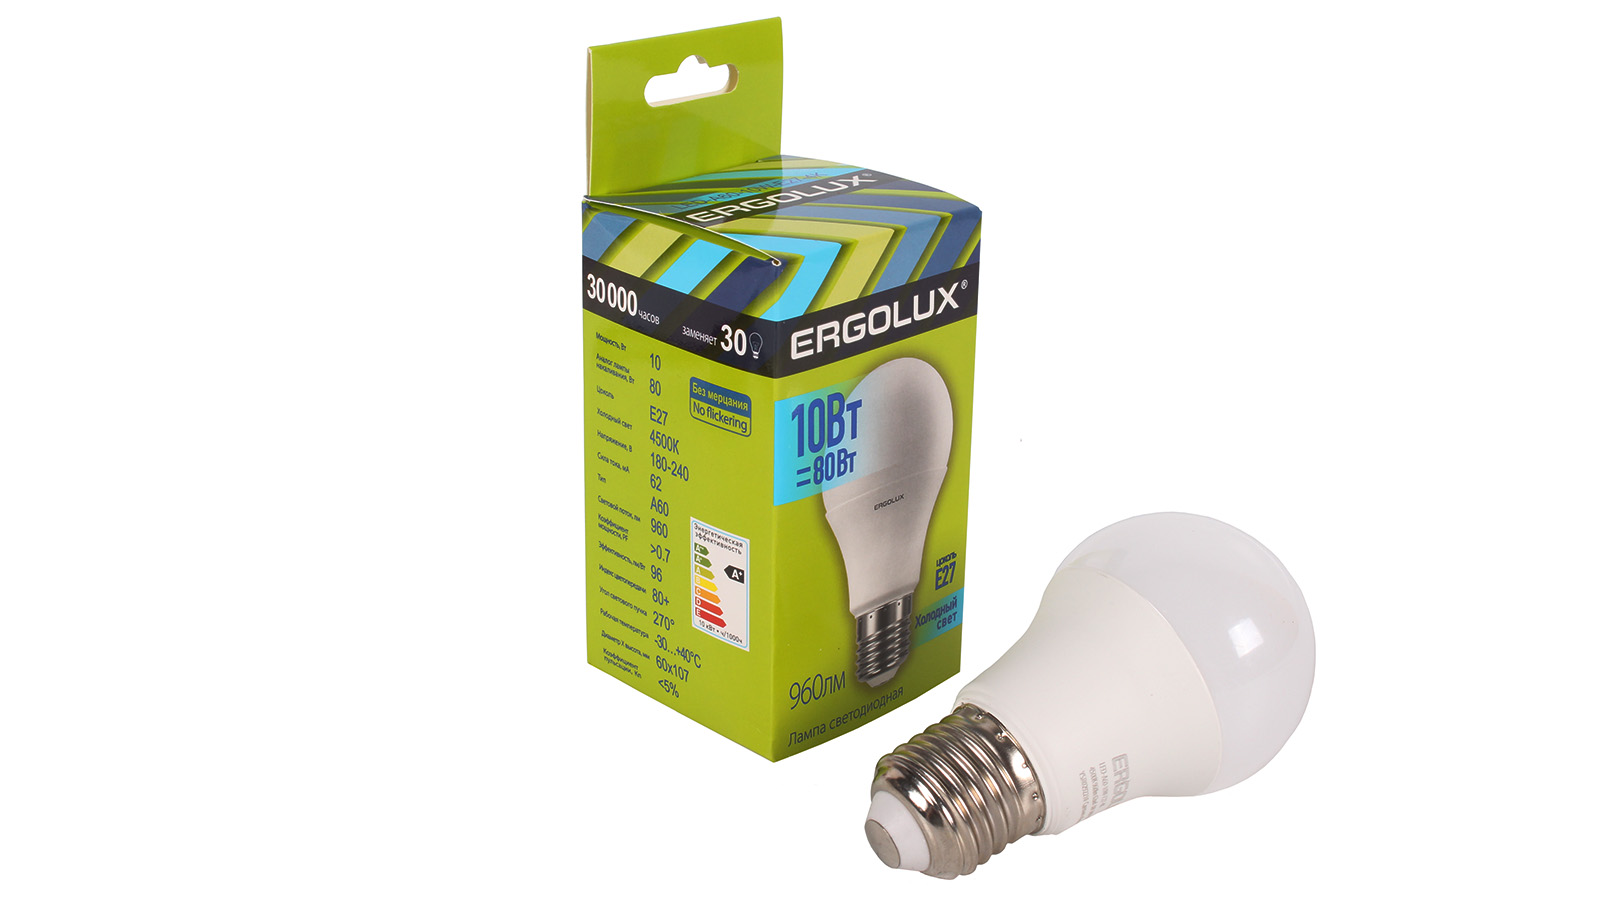 Лампа светодиодная Ergolux LED-A60-10W-E27-4K ЛОН